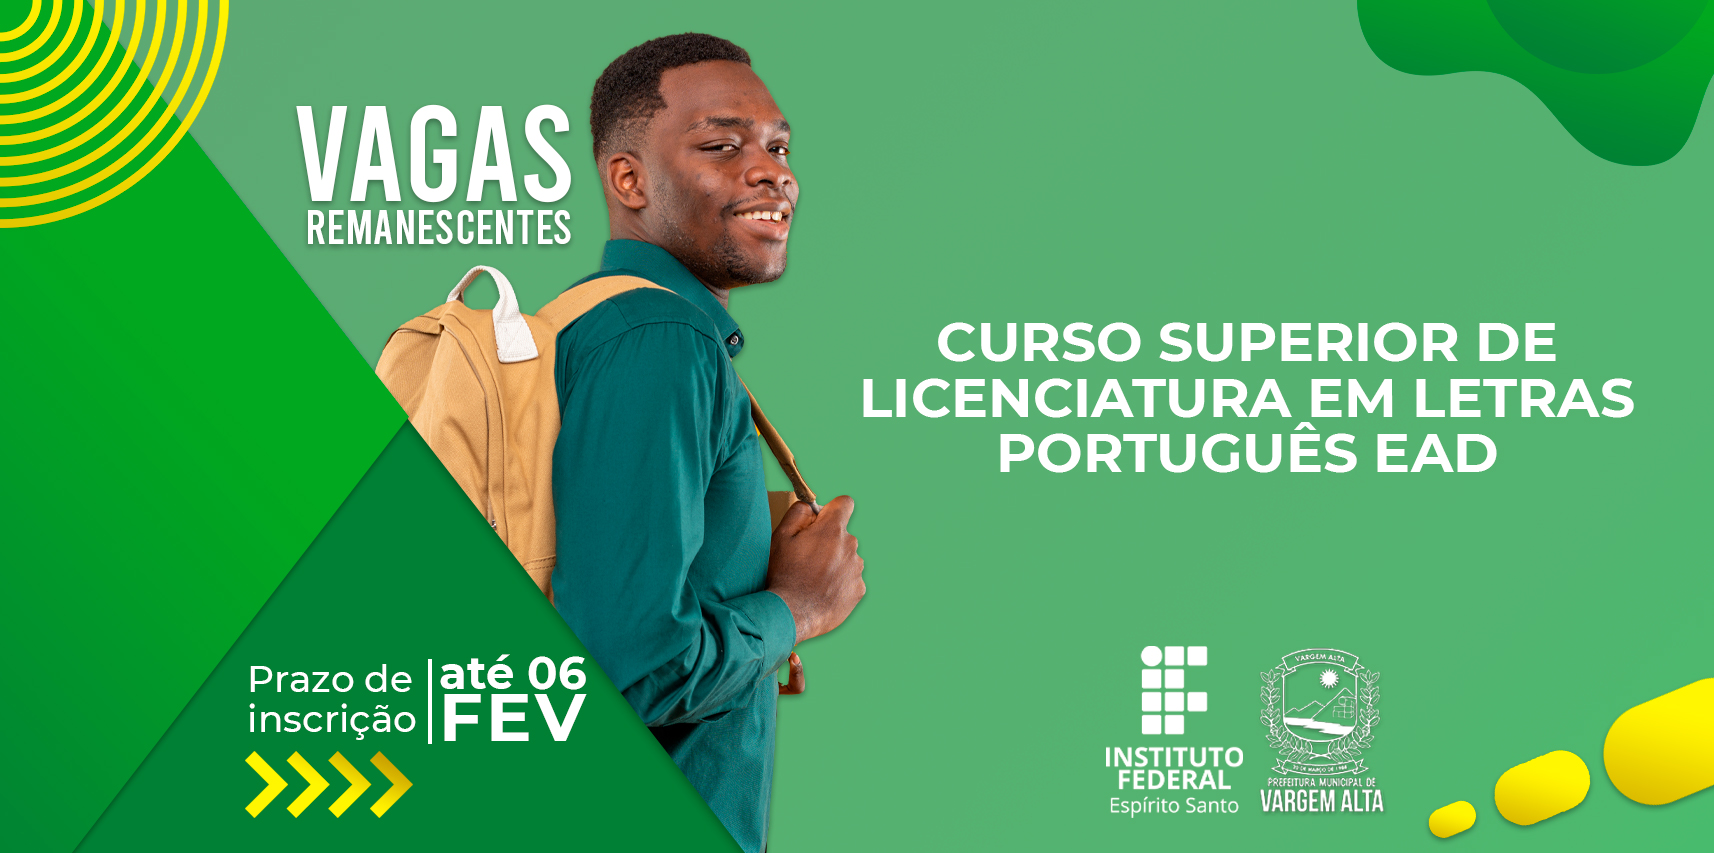 Polo UAB de Vargem Alta informa sobre vagas remanescentes para o curso de Licenciatura em Letras – Português EAD